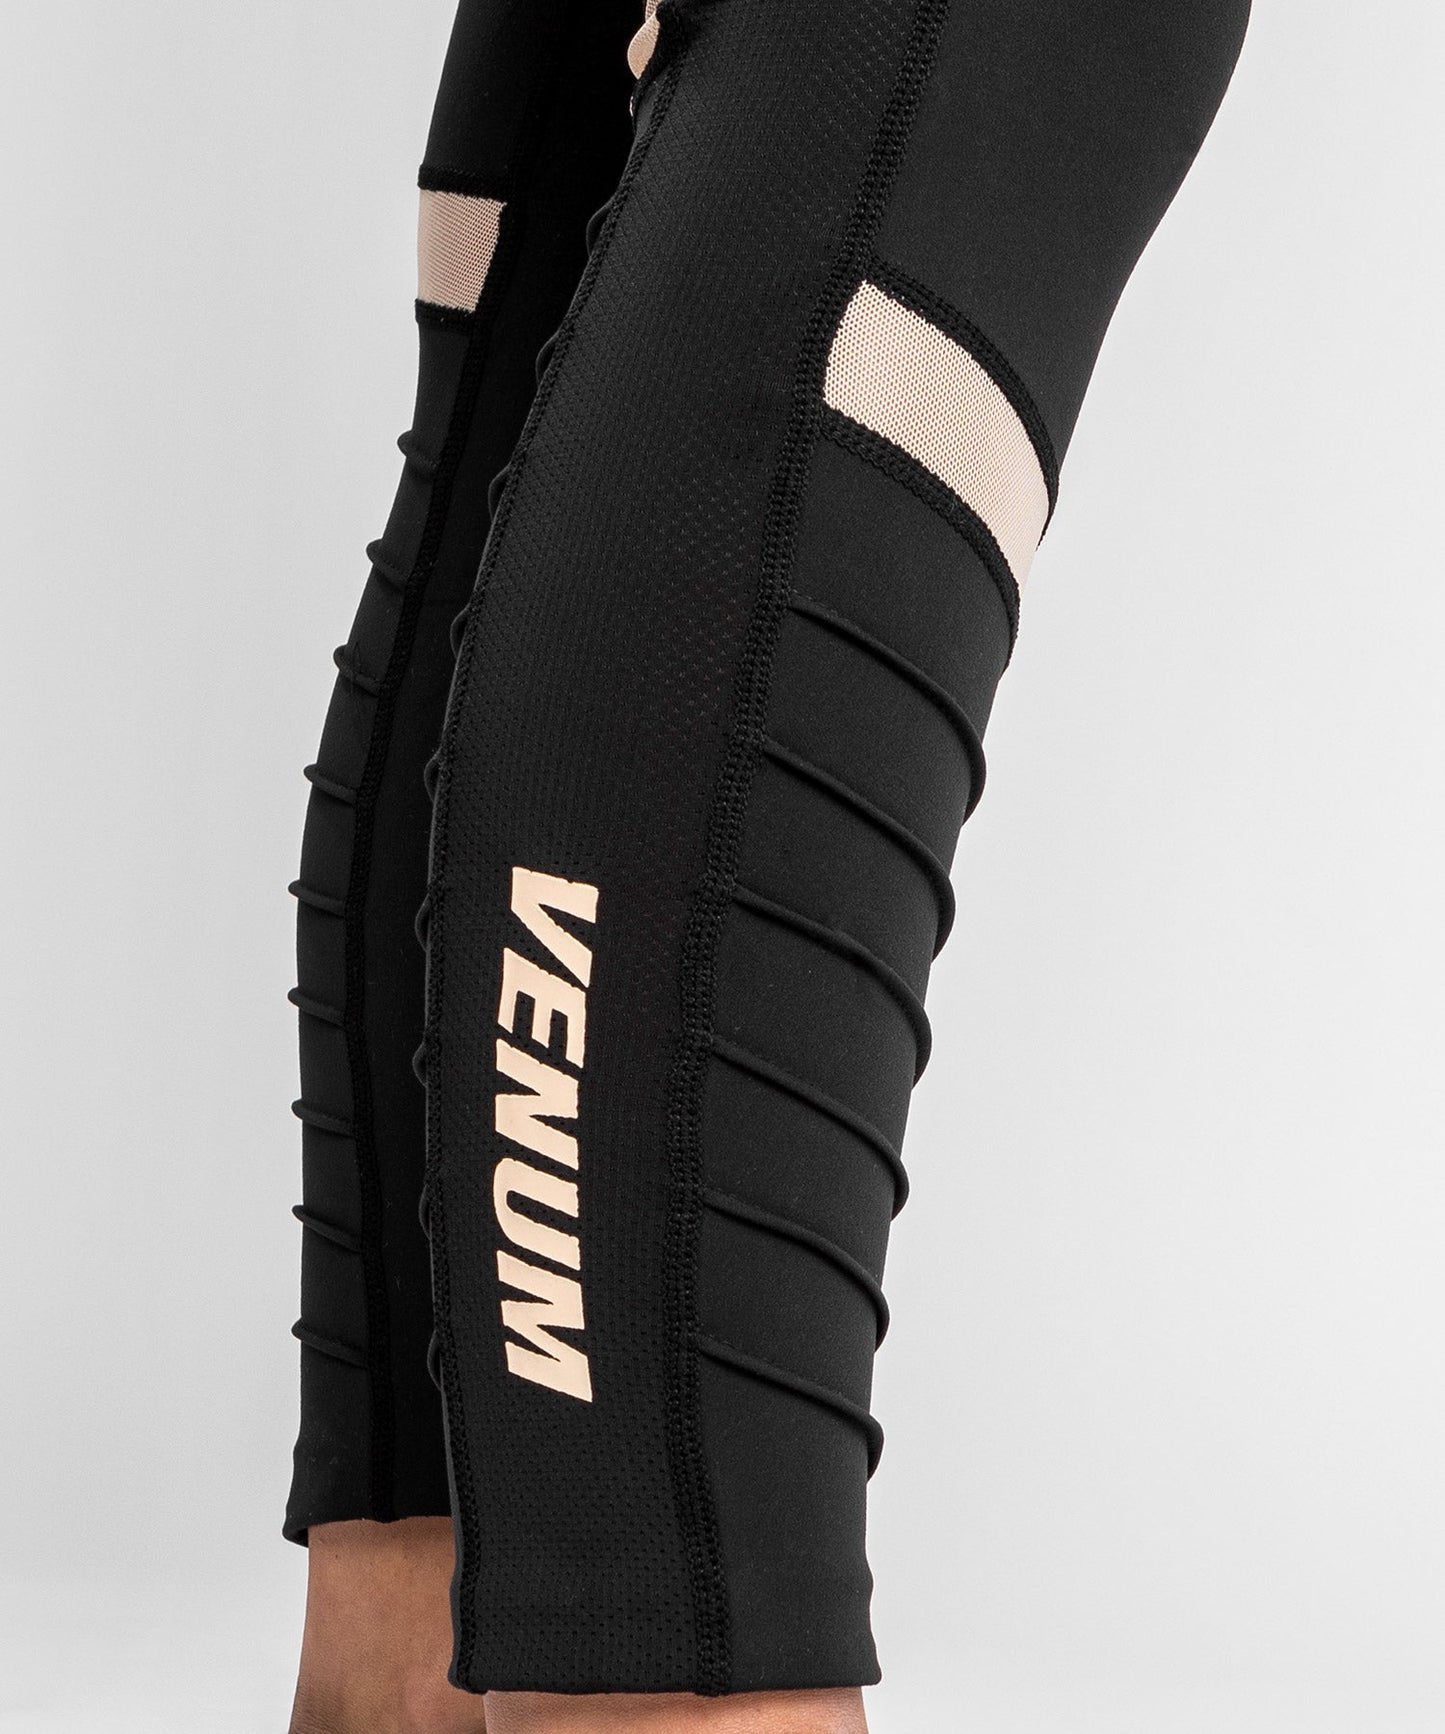 Venum Moto Leggings - For Women - Black/Sand